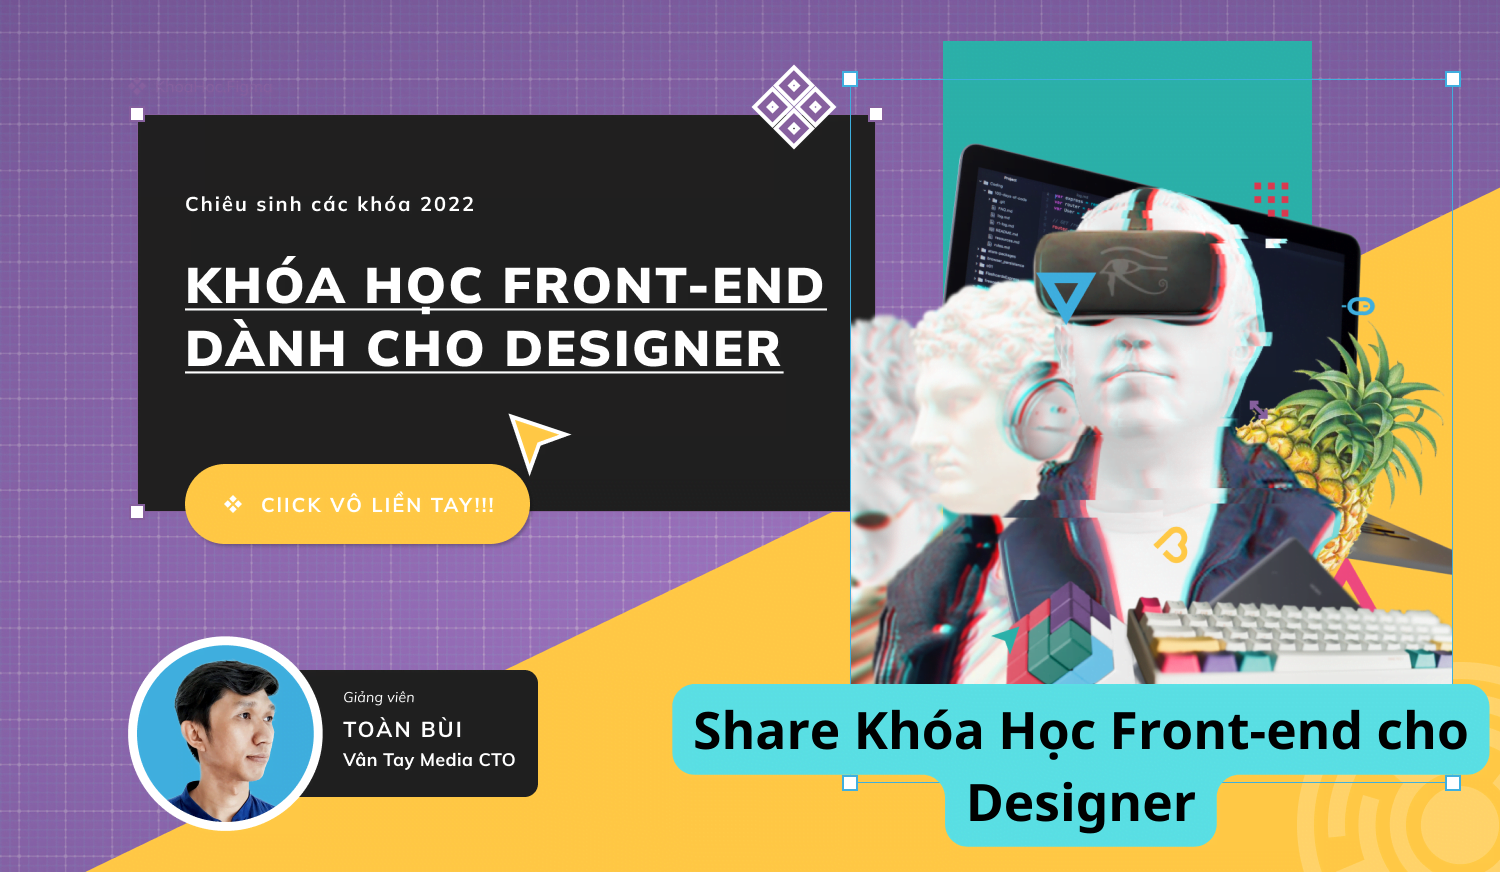 Share Khóa Học Front-end cho Designer